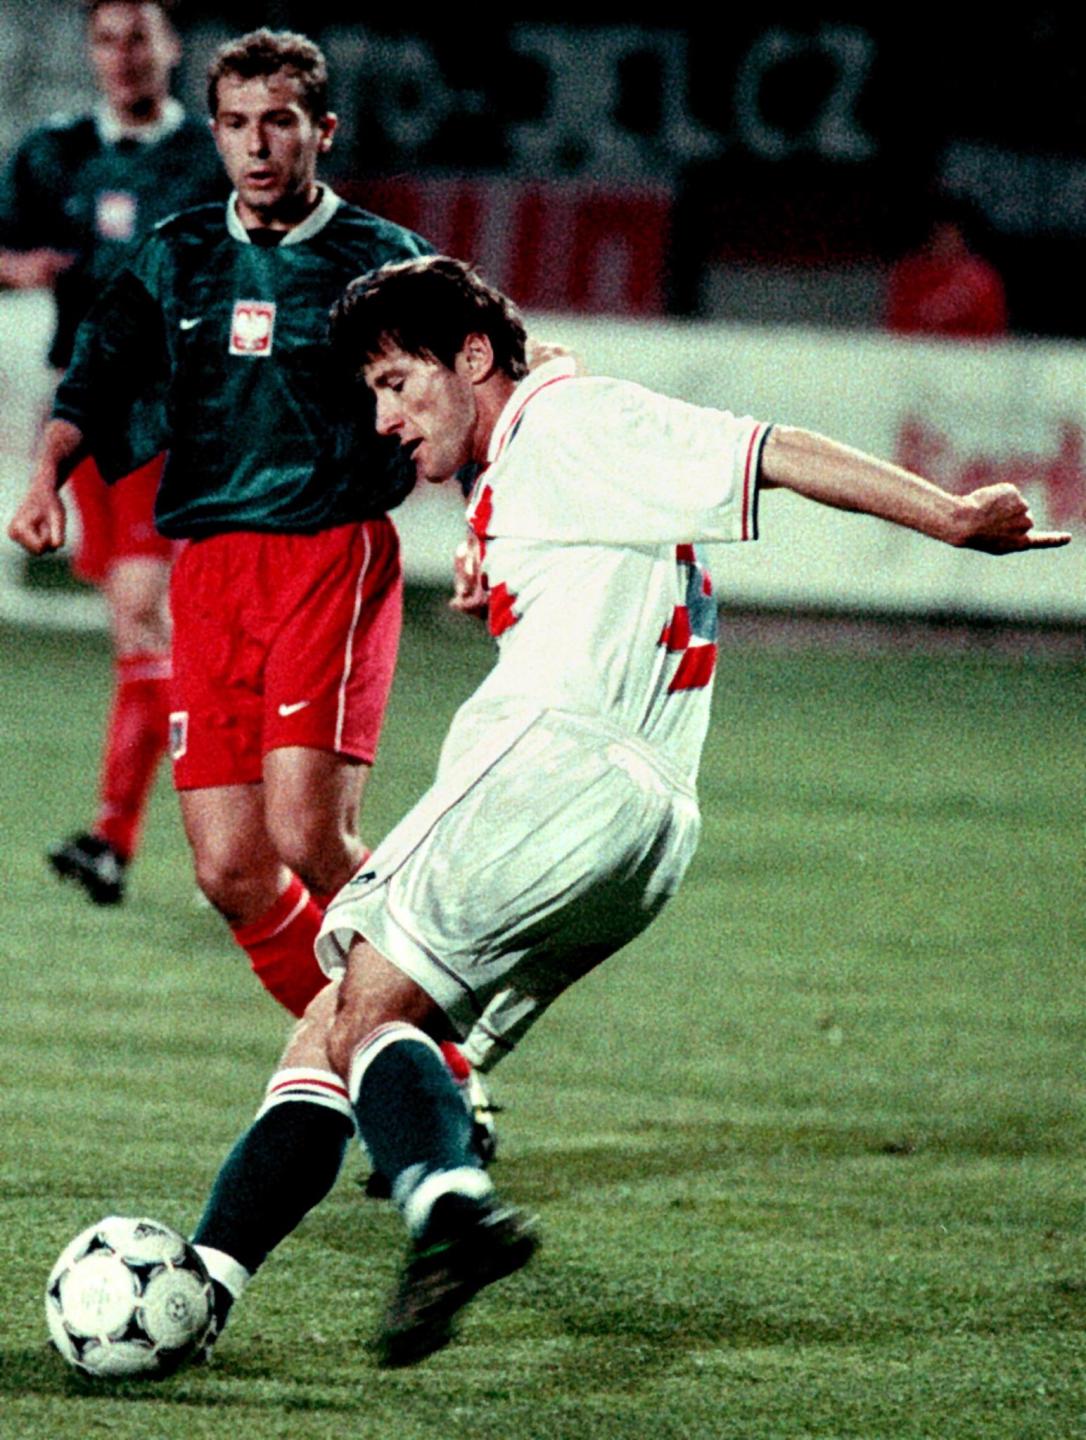 Przy piłce gwiazda reprezentacji Chorwacji Davor Šuker. Z prawej widoczny Marek Koźmiński. Towarzyski mecz Chorwacja - Polska z kwietnia 1998 roku.